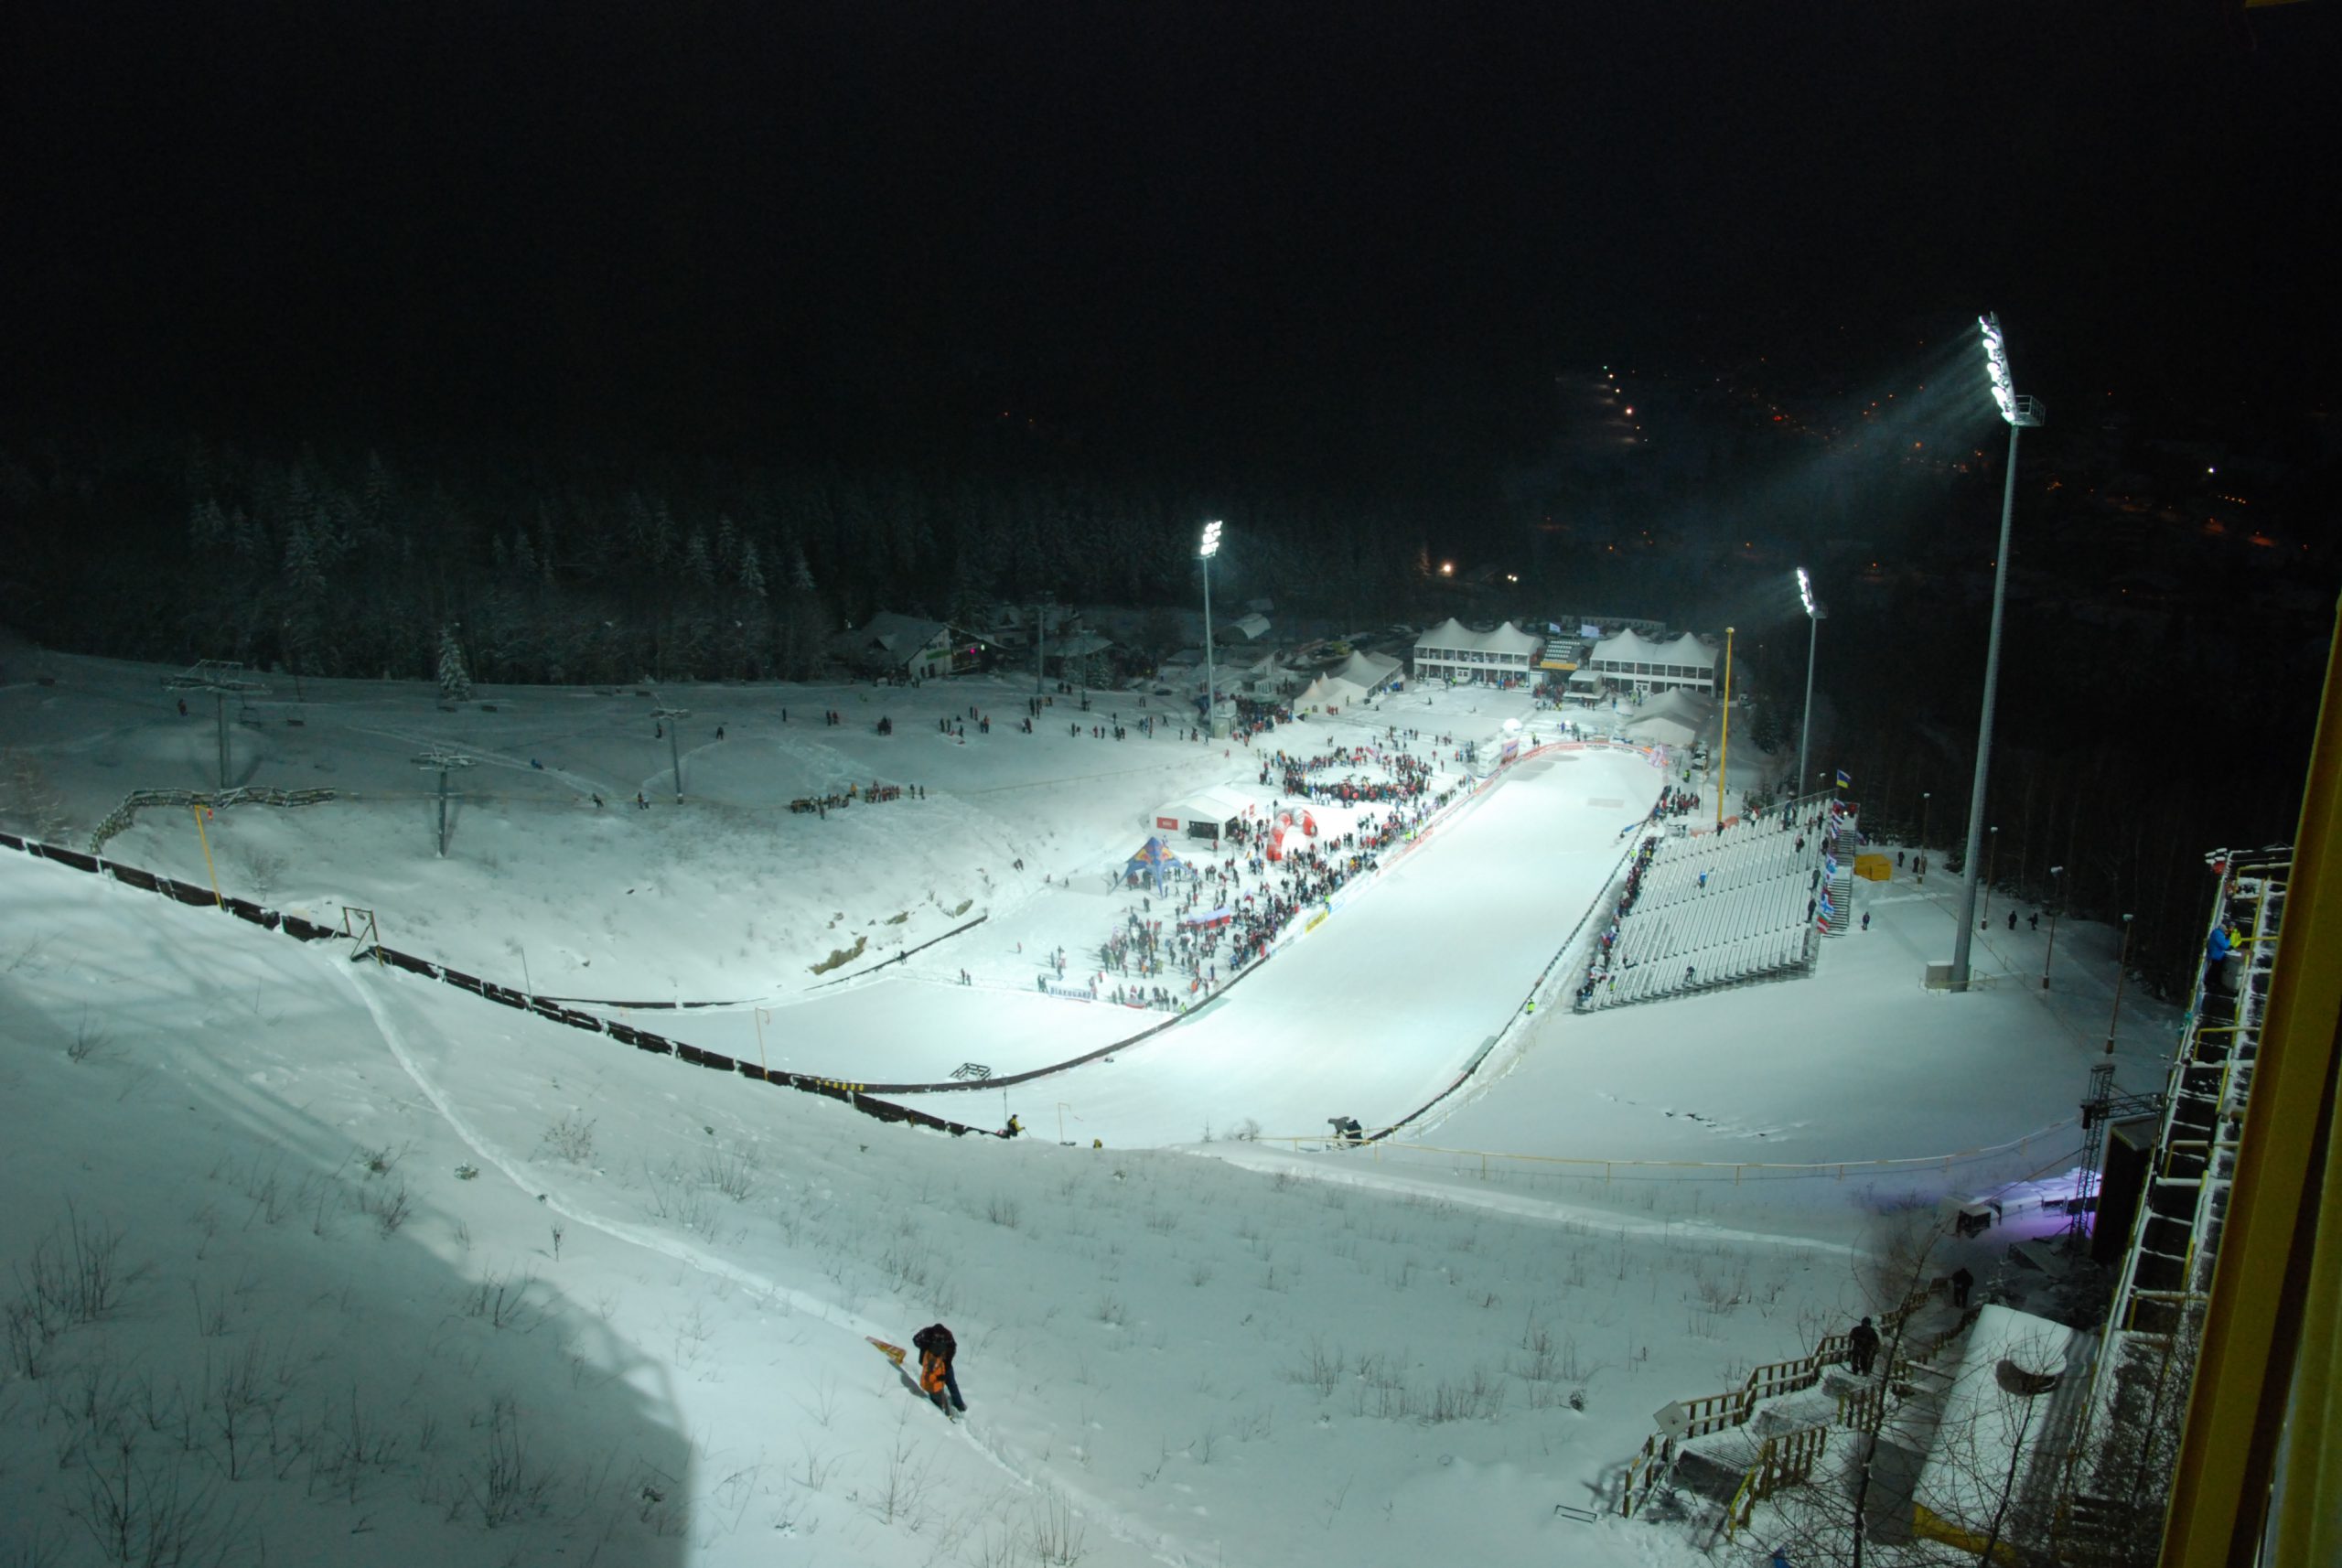 Čerťák Ski Jump, Harrachov